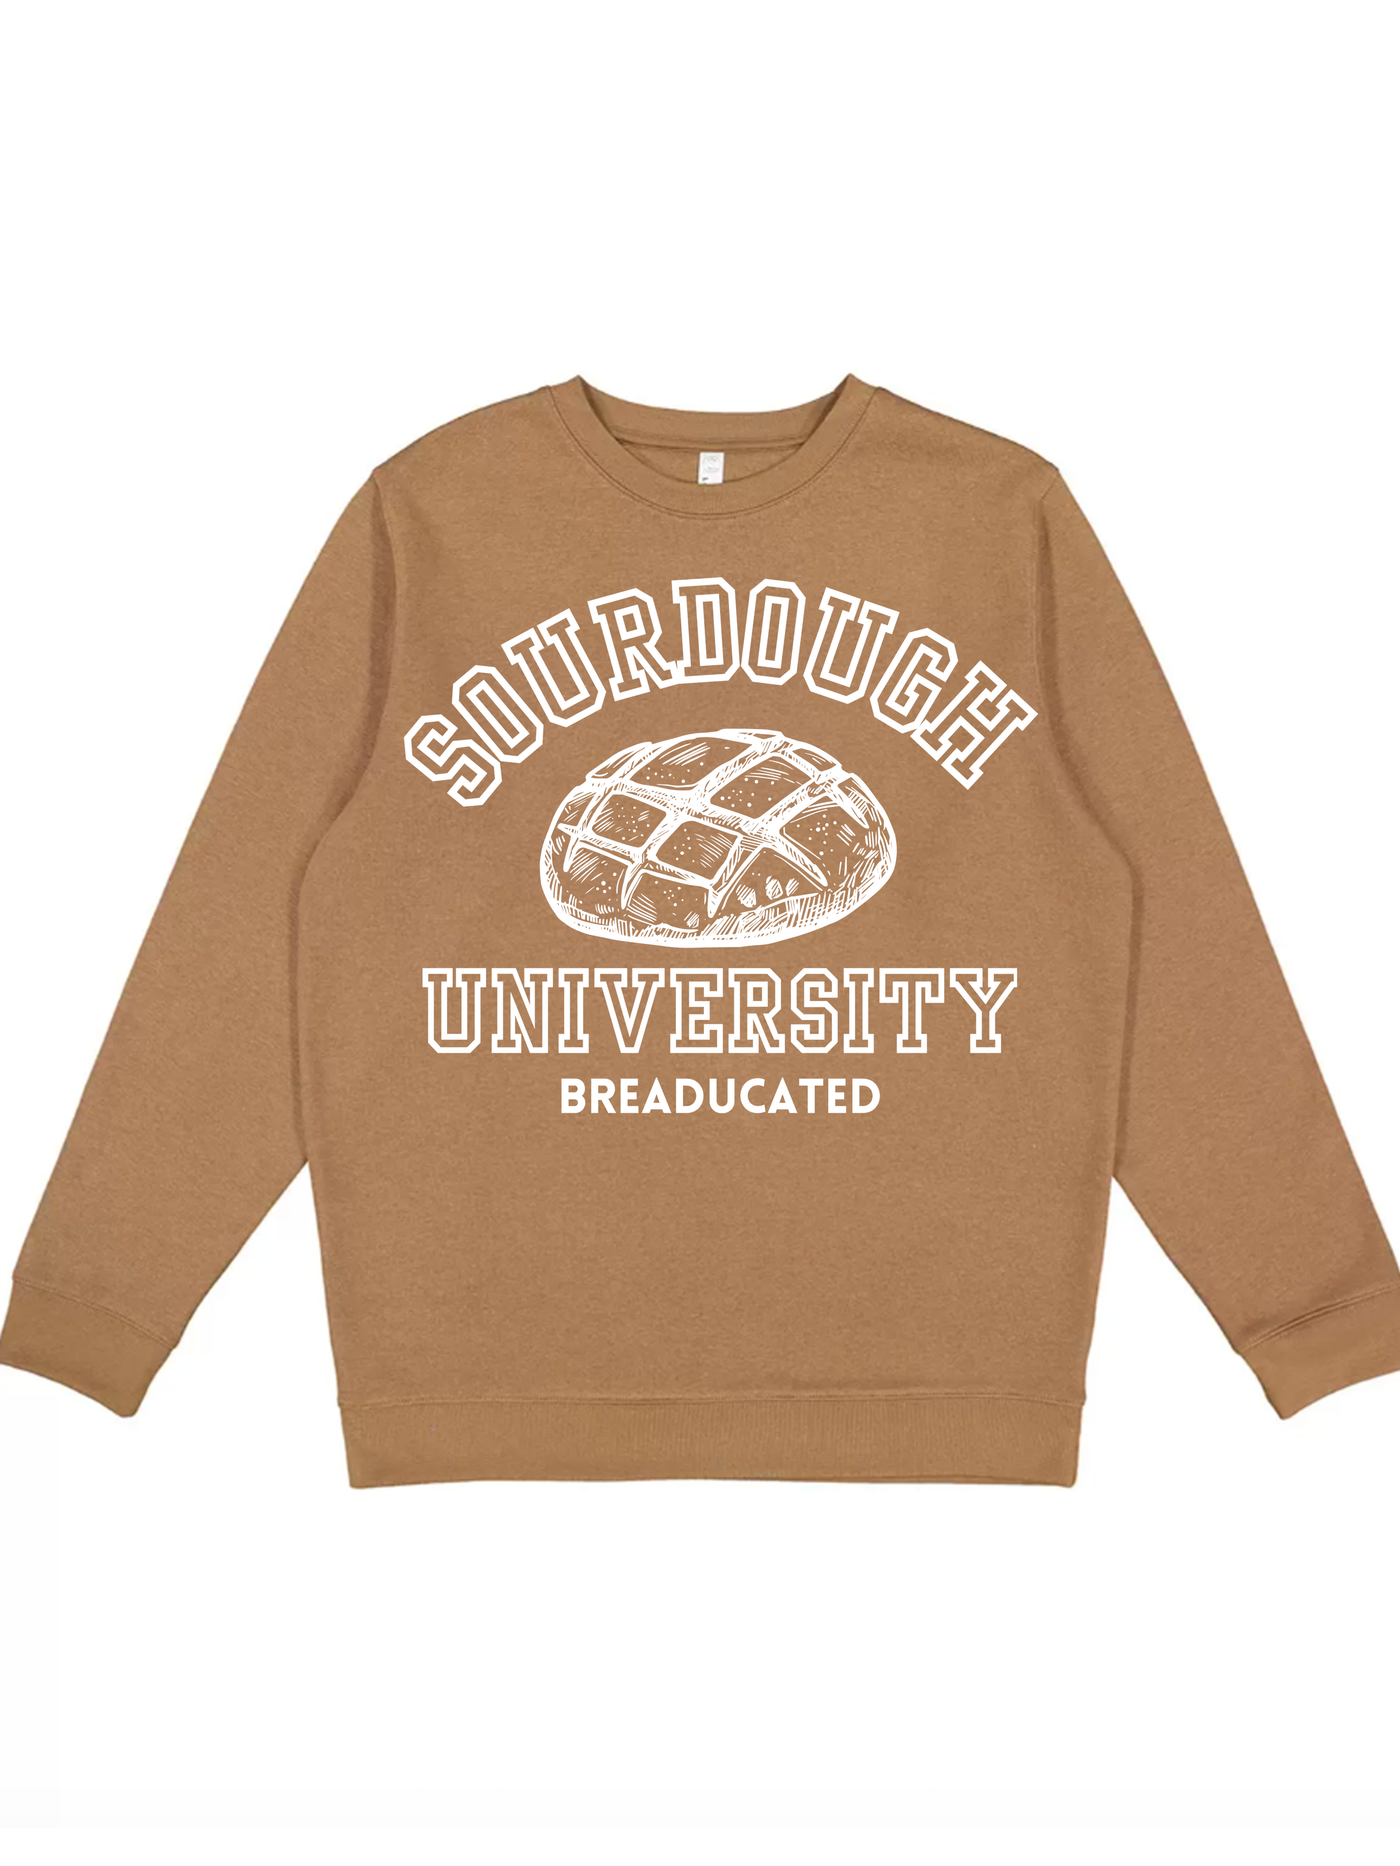 Sourdough University Tee/Sweatshirt